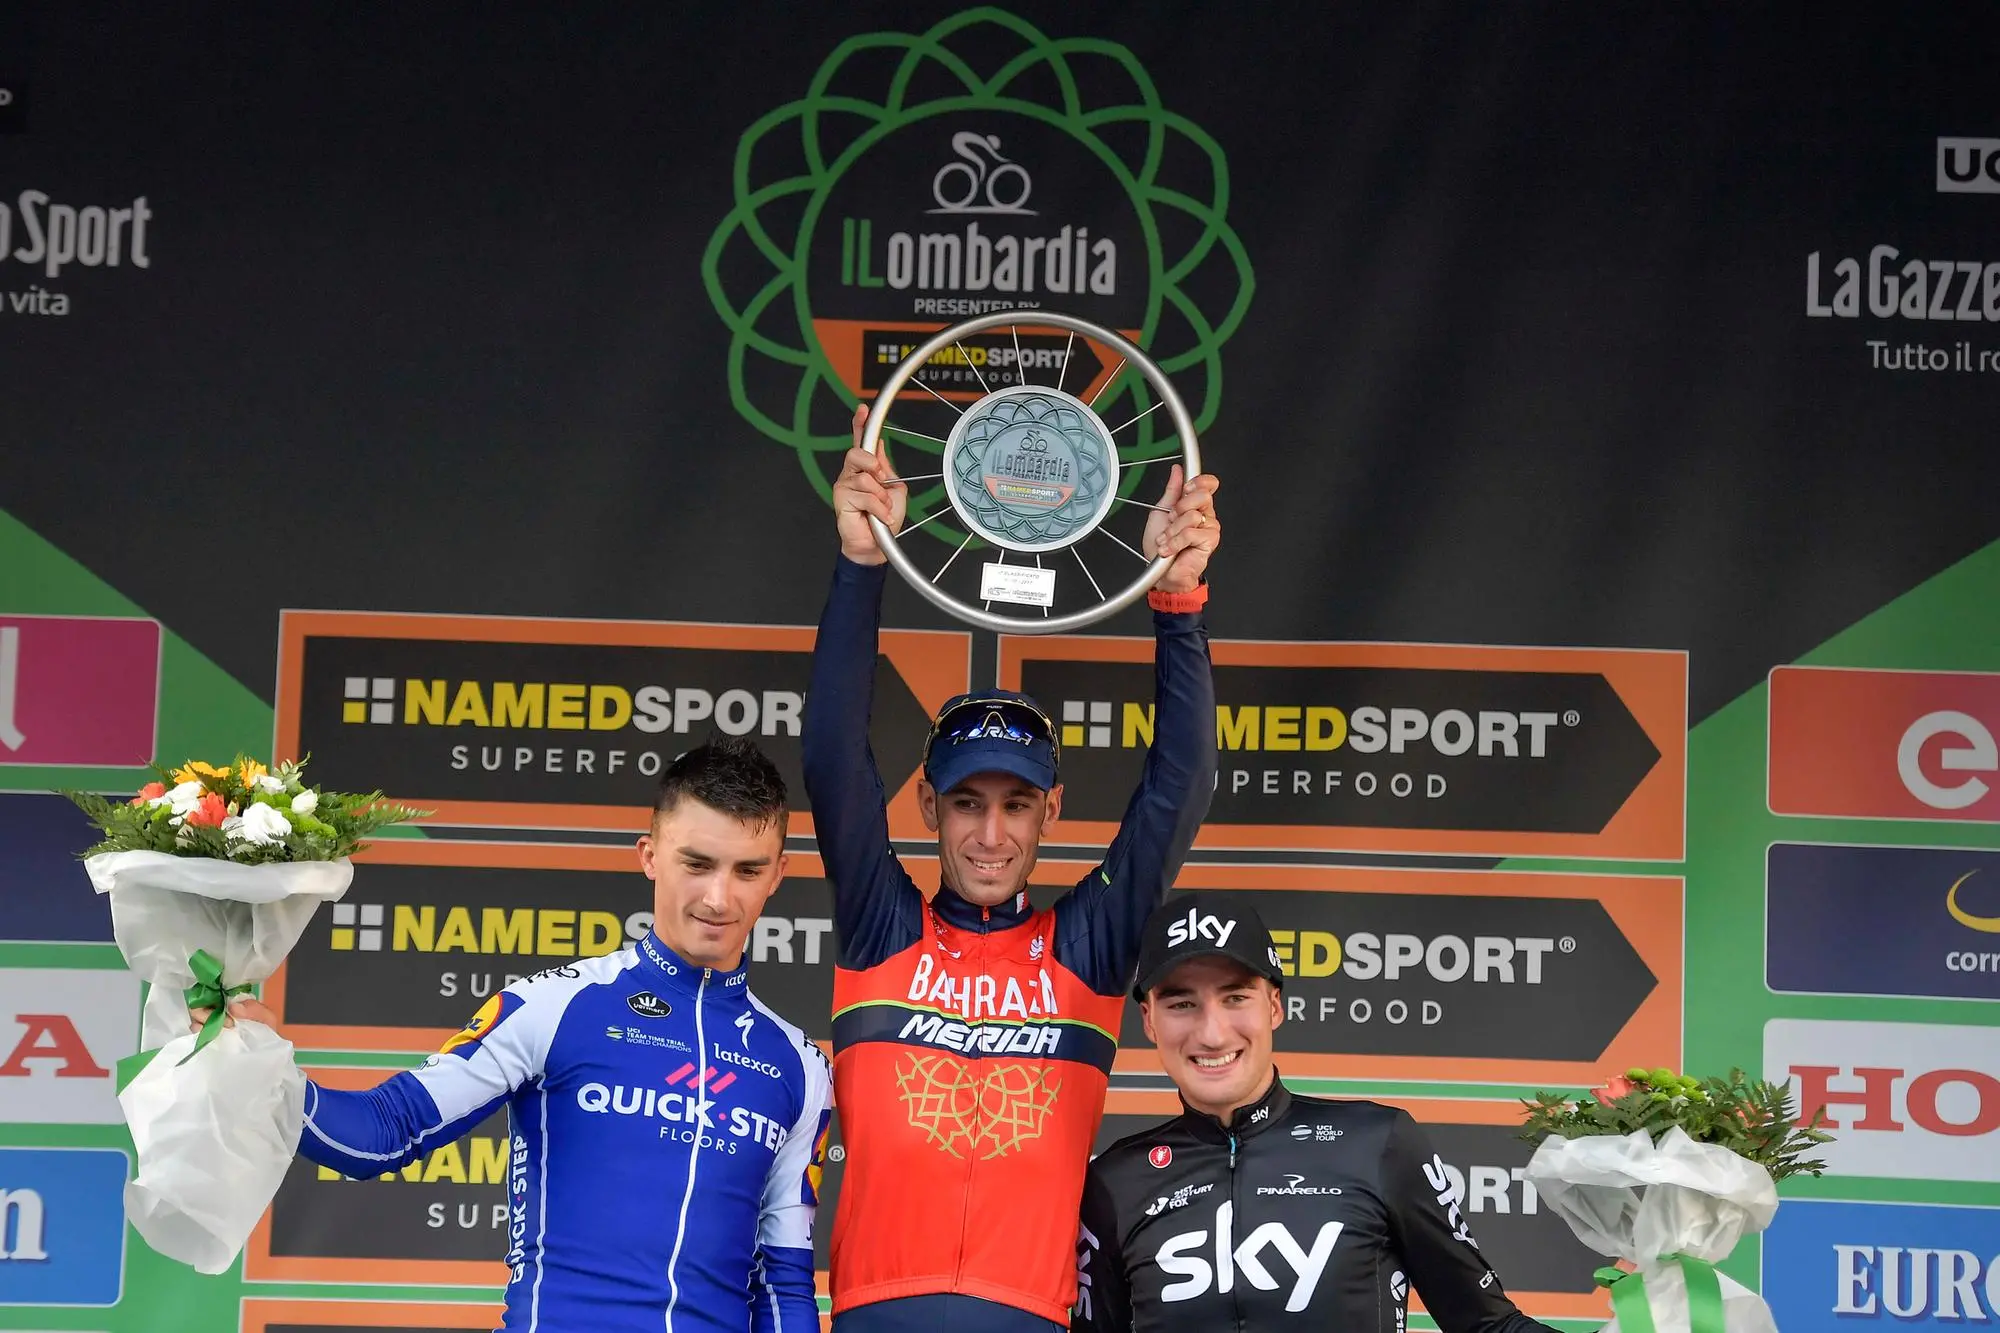 Il podio del Lombardia 2017: Julian Alaphilippe, Vincenzo Nibali e Gianni Moscon (LaPresse, archivio L'Unione sarda)